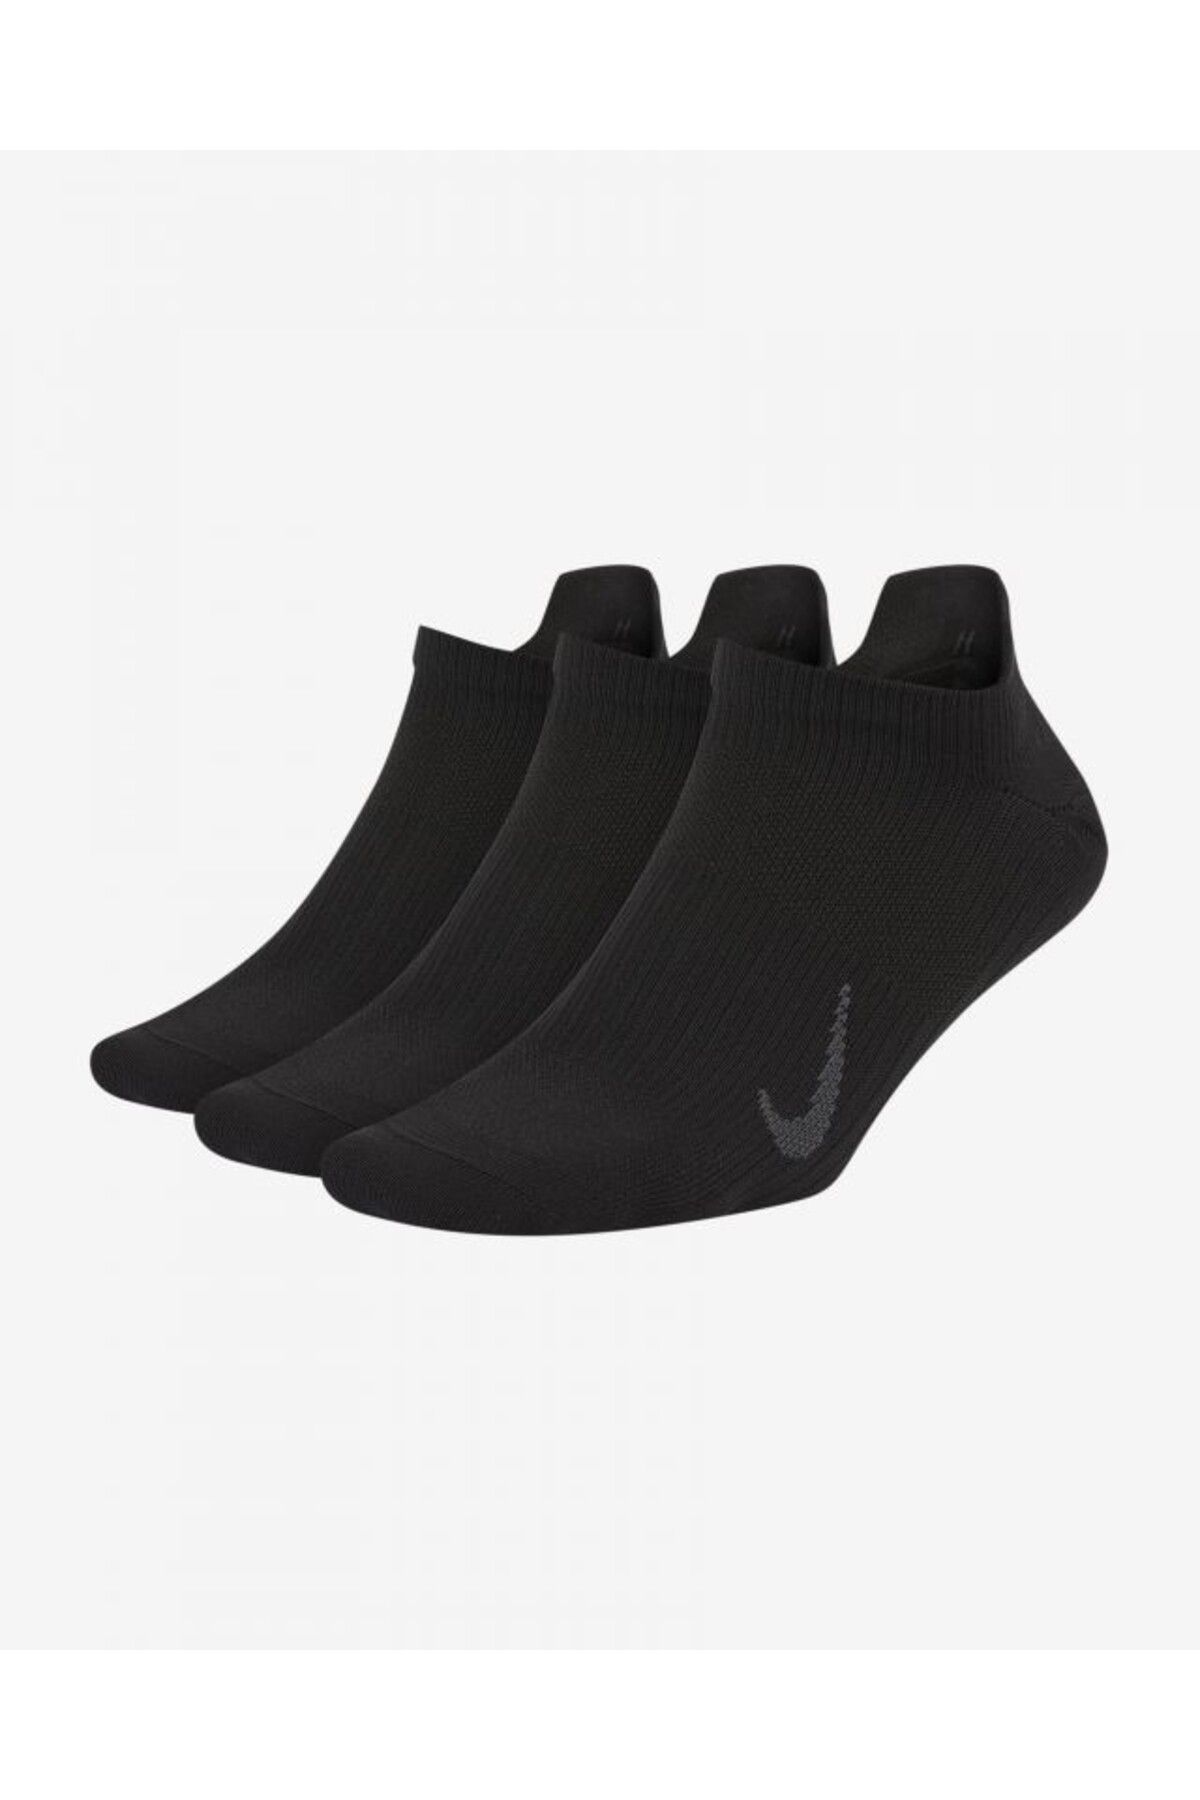 Nike Everyday Plus Lightweight DRY FİT Bilek Çorap Kadın Çorap ^3 Çift 34-38 Numara